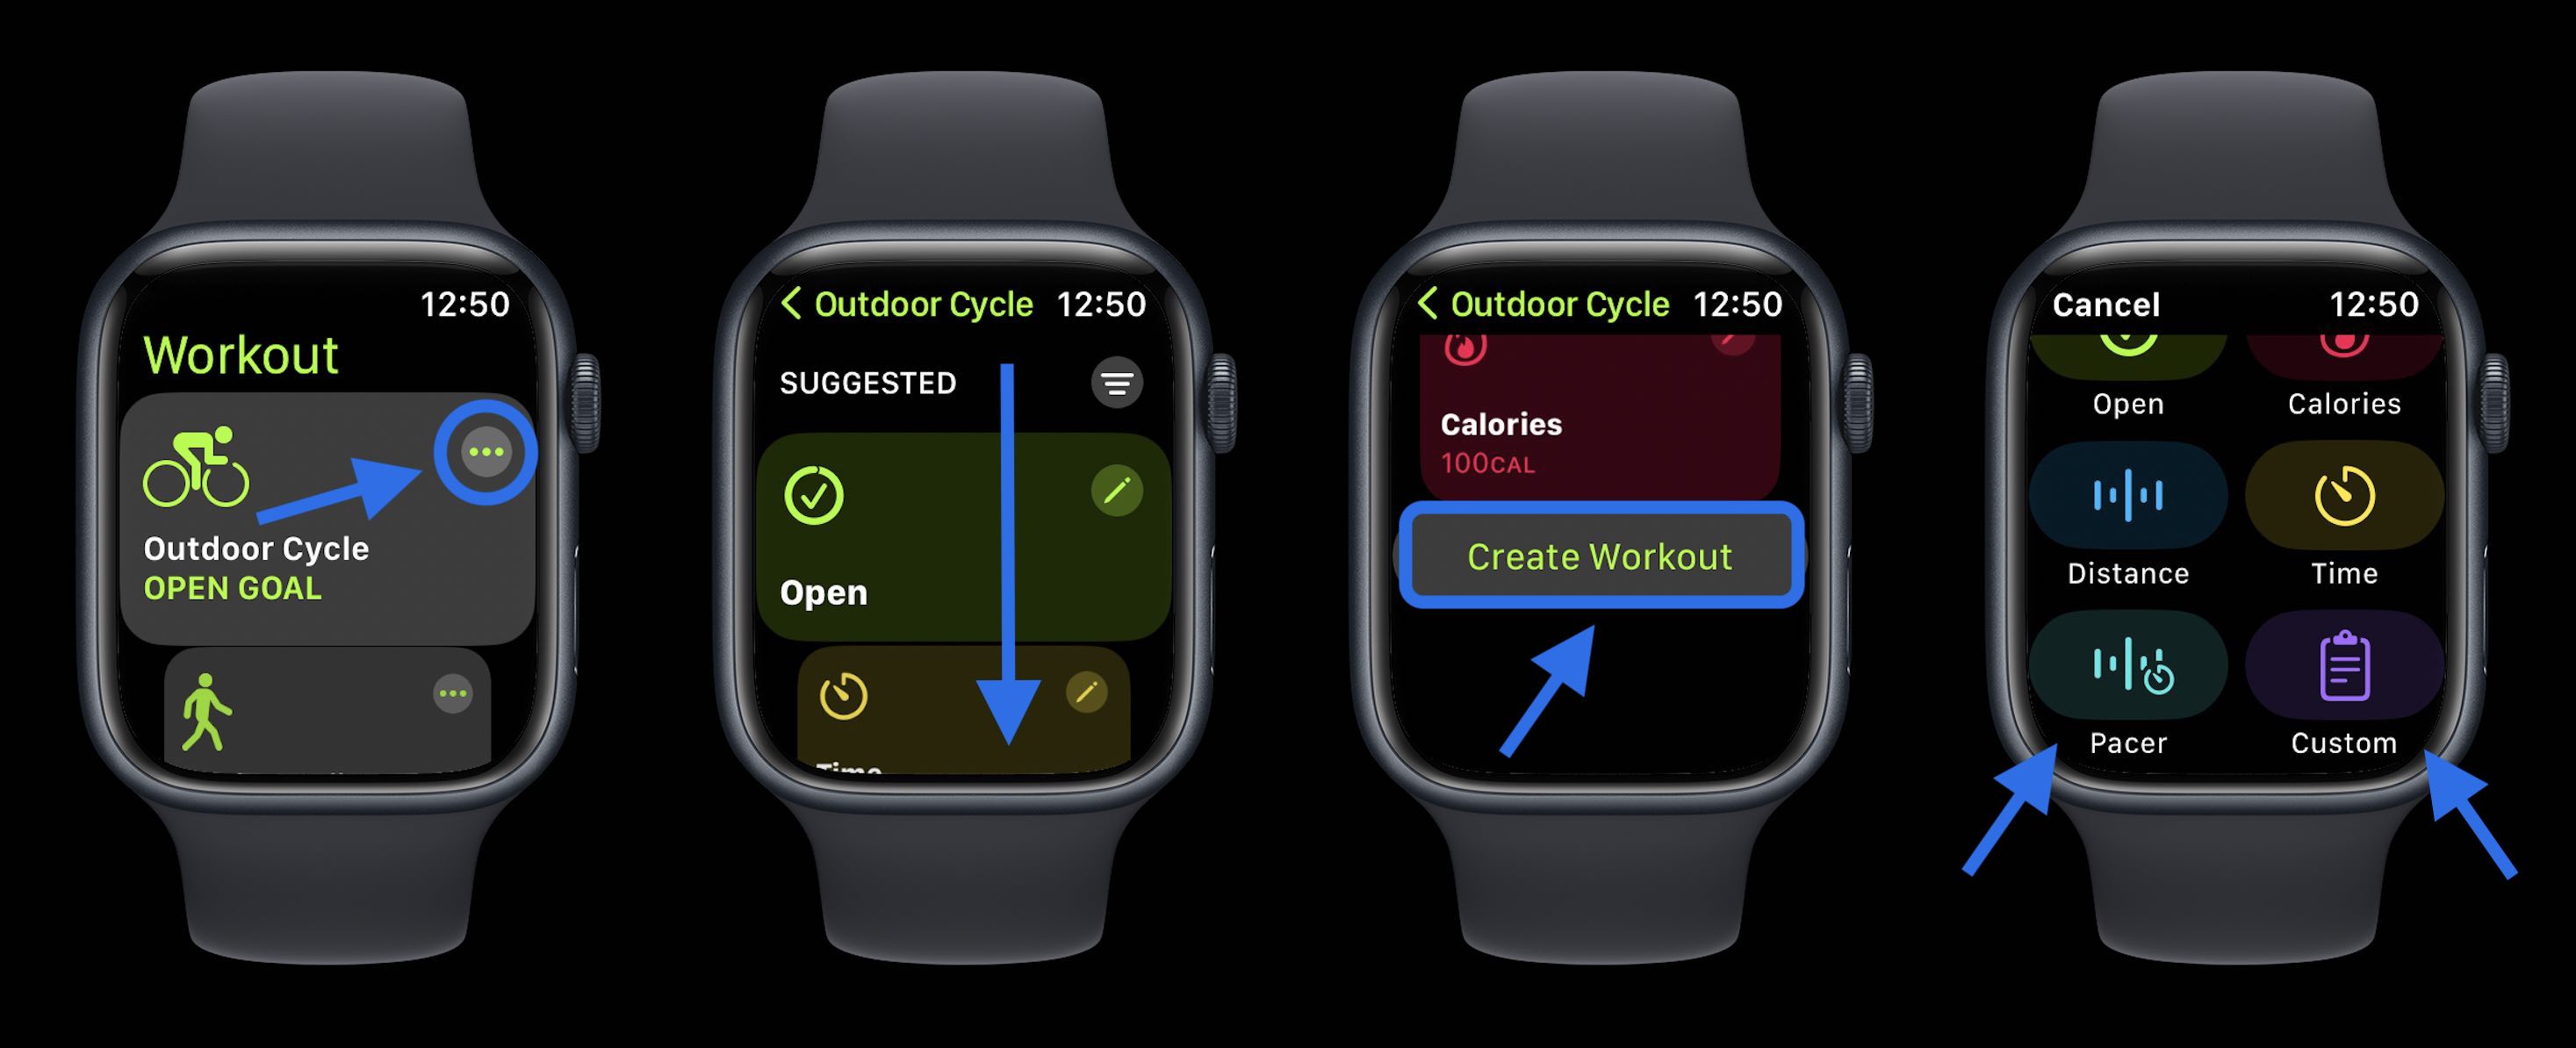 Циклические показатели Apple Watch